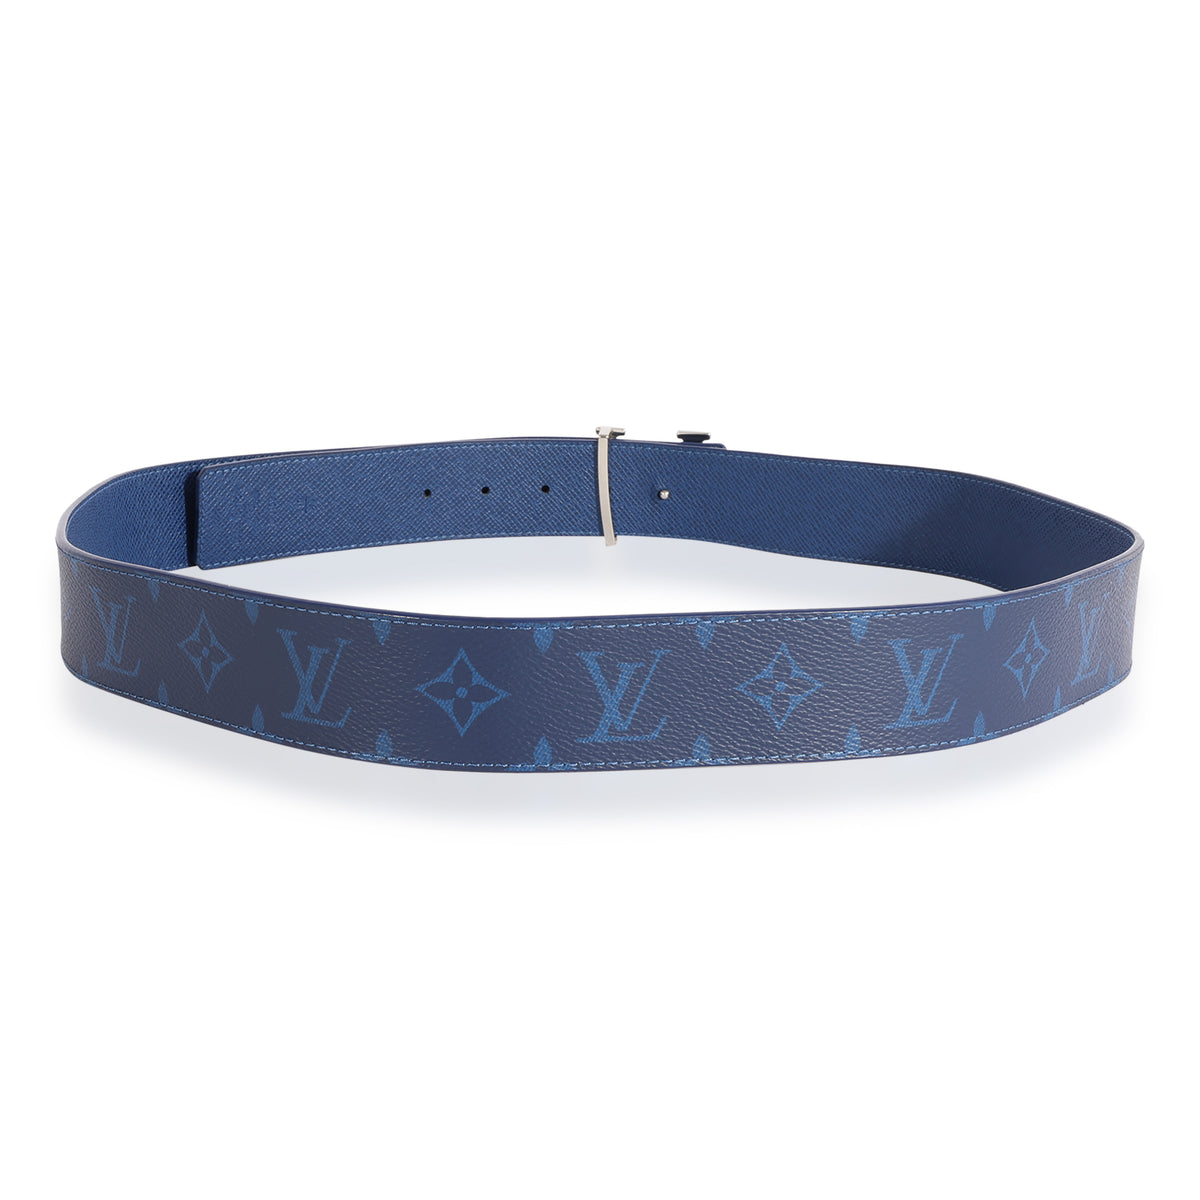 Louis Vuitton Initiales Reversible Belt - Cobalt Blue